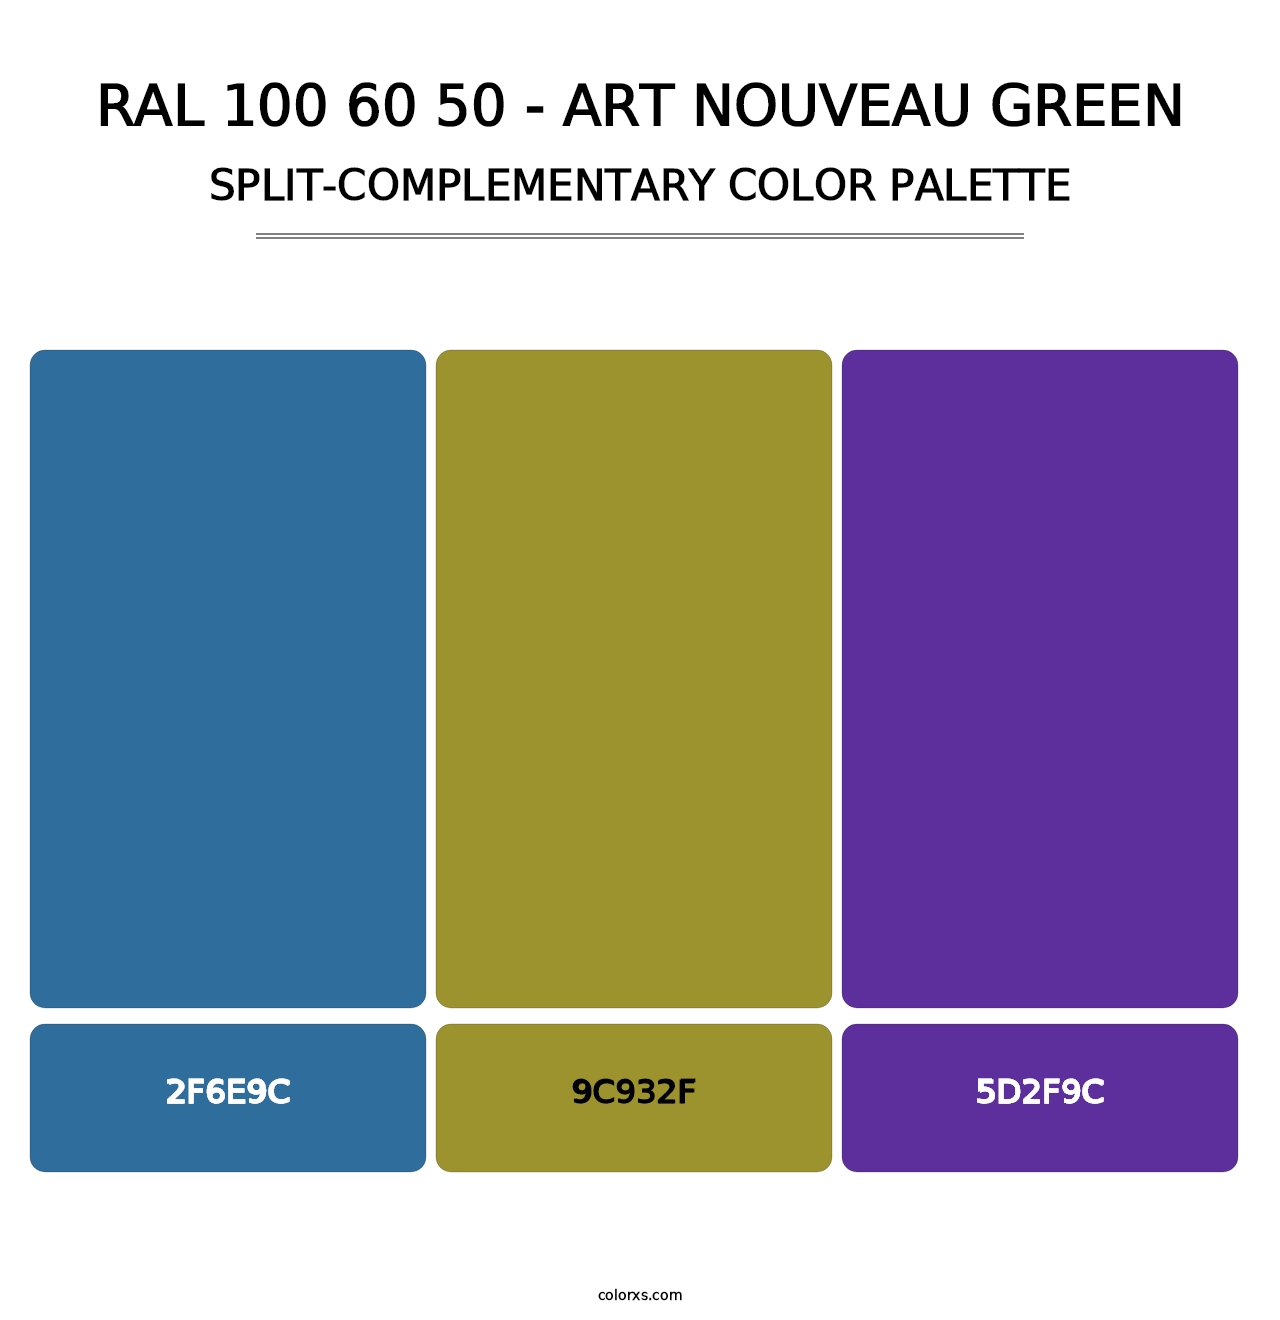 RAL 100 60 50 - Art Nouveau Green - Split-Complementary Color Palette